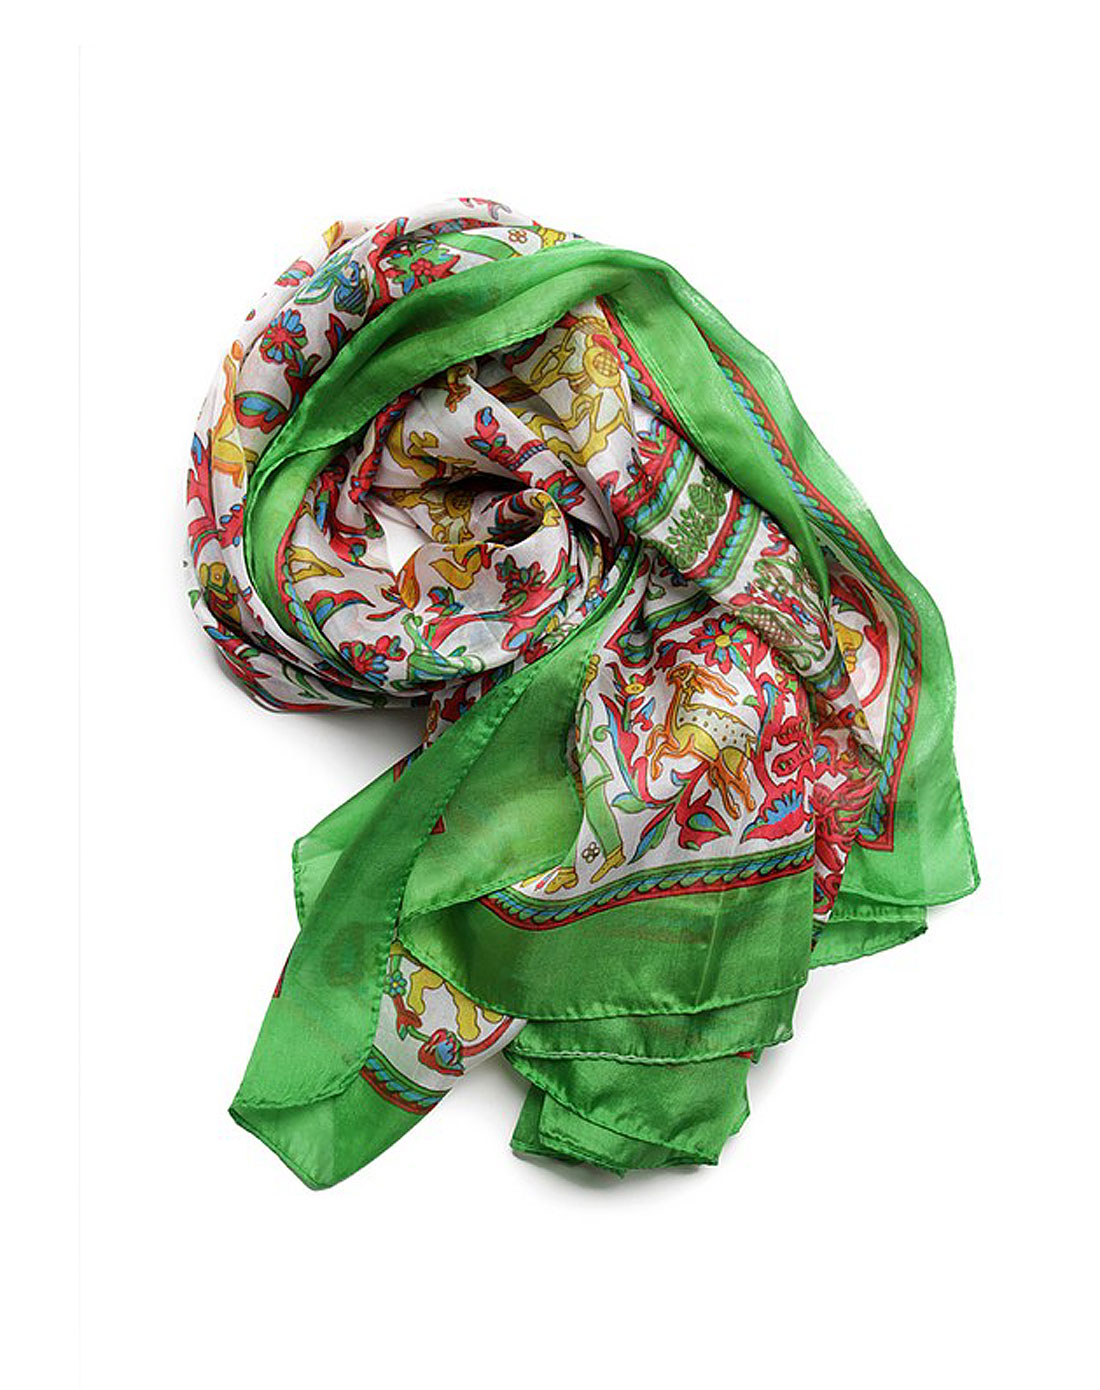 究极绿宝石5丝绸围巾图片